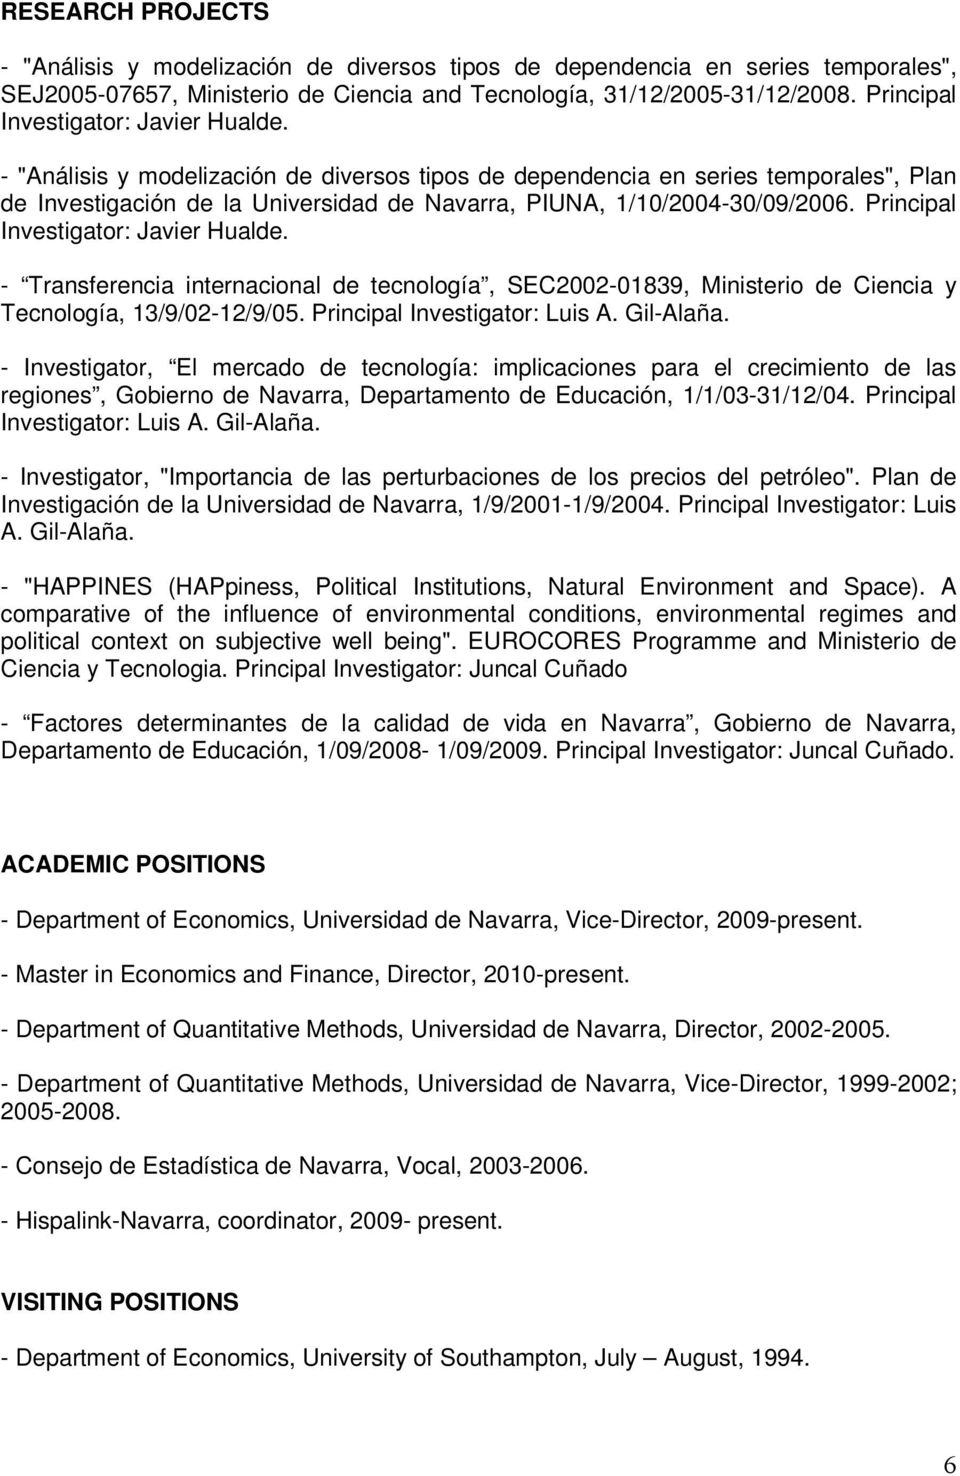 - "Análisis y modelización de diversos tipos de dependencia en series temporales", Plan de Investigación de la Universidad de Navarra, PIUNA, 1/10/2004-30/09/2006.